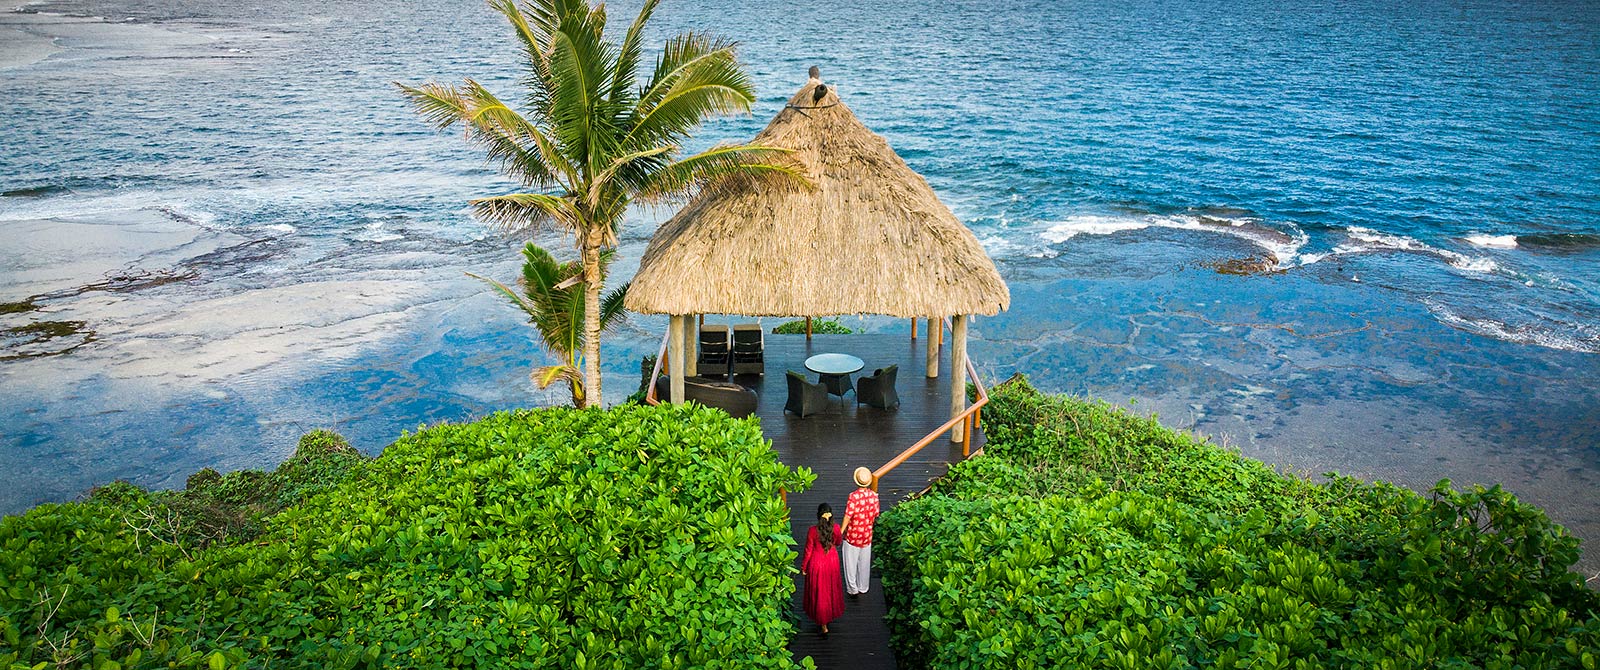 Tropical Ocean Views at Namale Resort & Spa Fiji - Active Nature Retreat Package